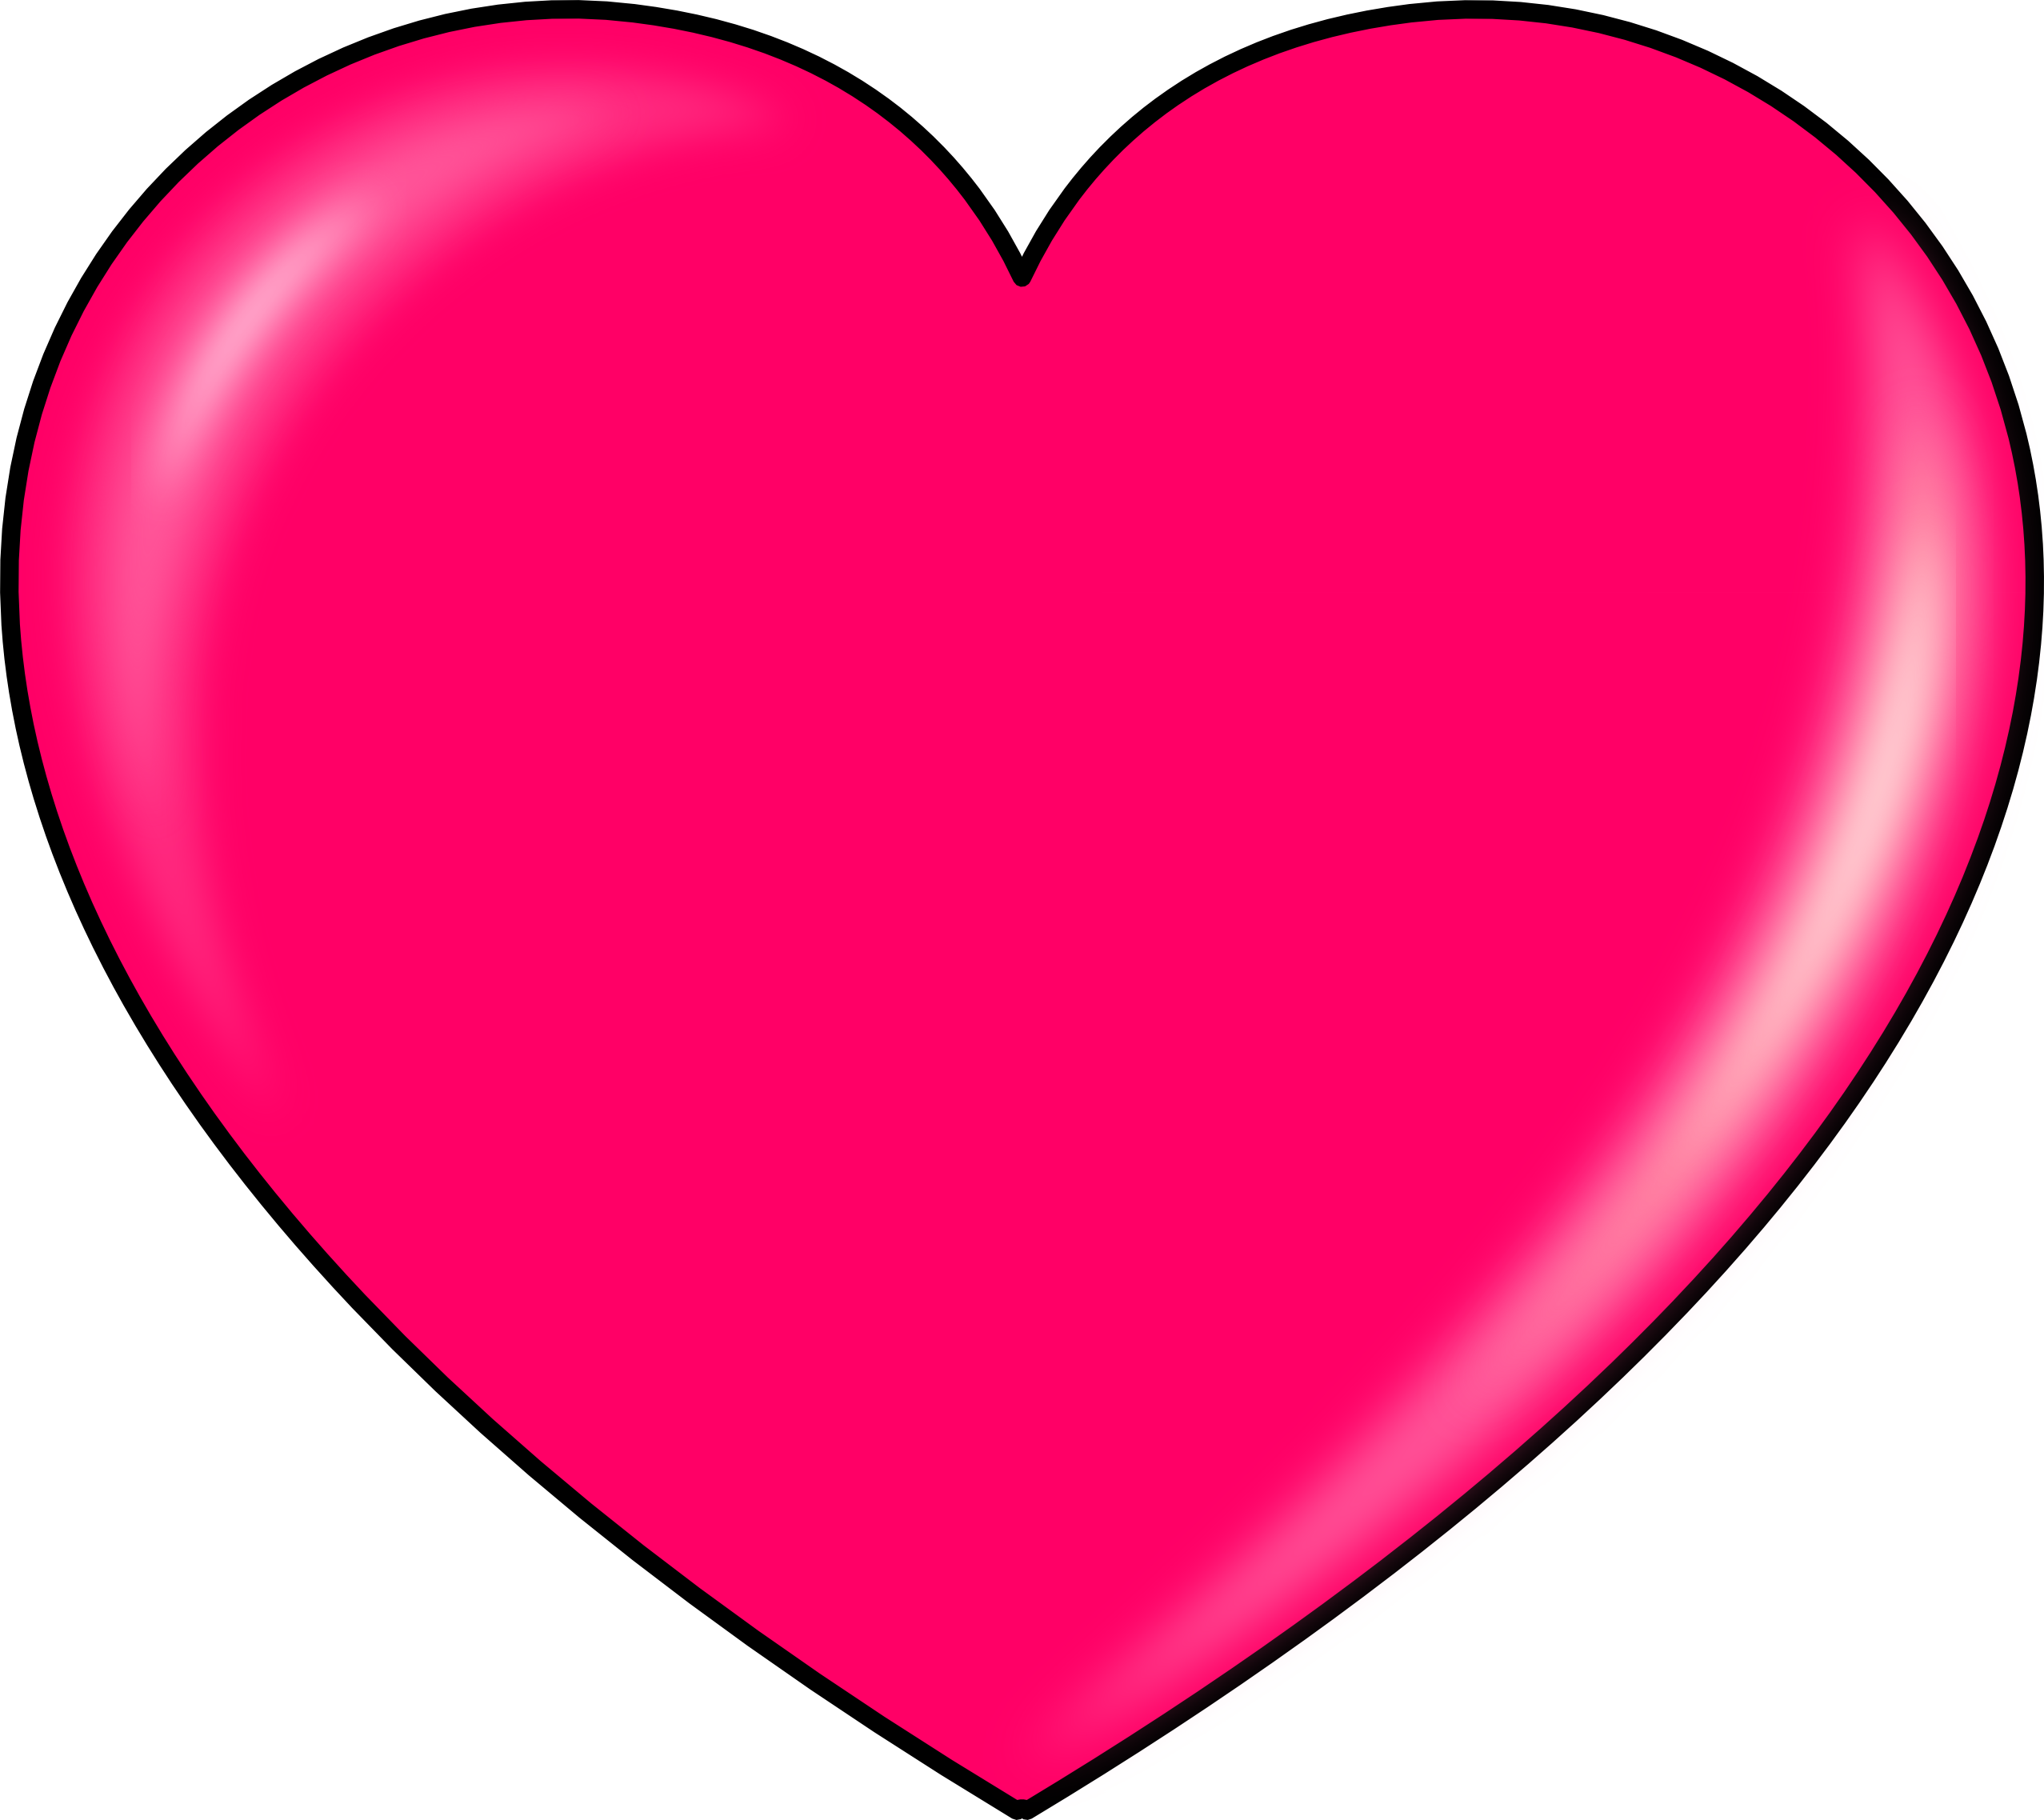 Heart Clip art - Red heart PN